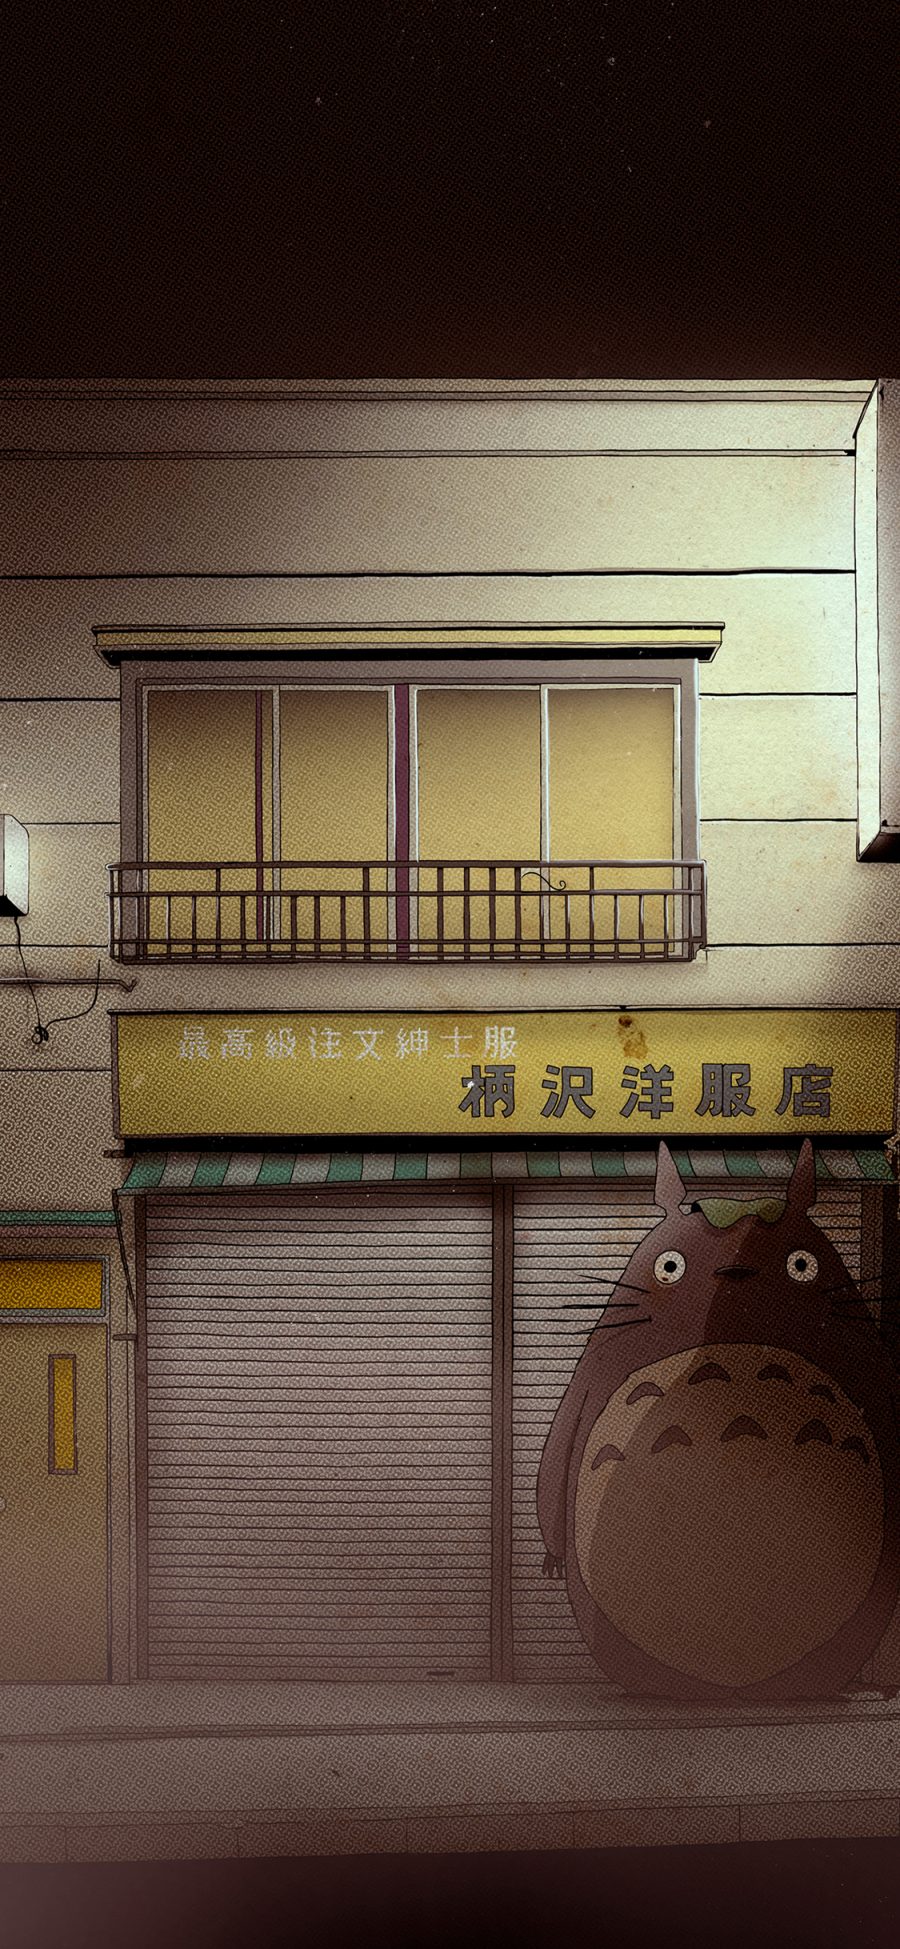 [2436×1125]龙猫 宫崎骏 漫画 复古 房屋 苹果手机动漫壁纸图片